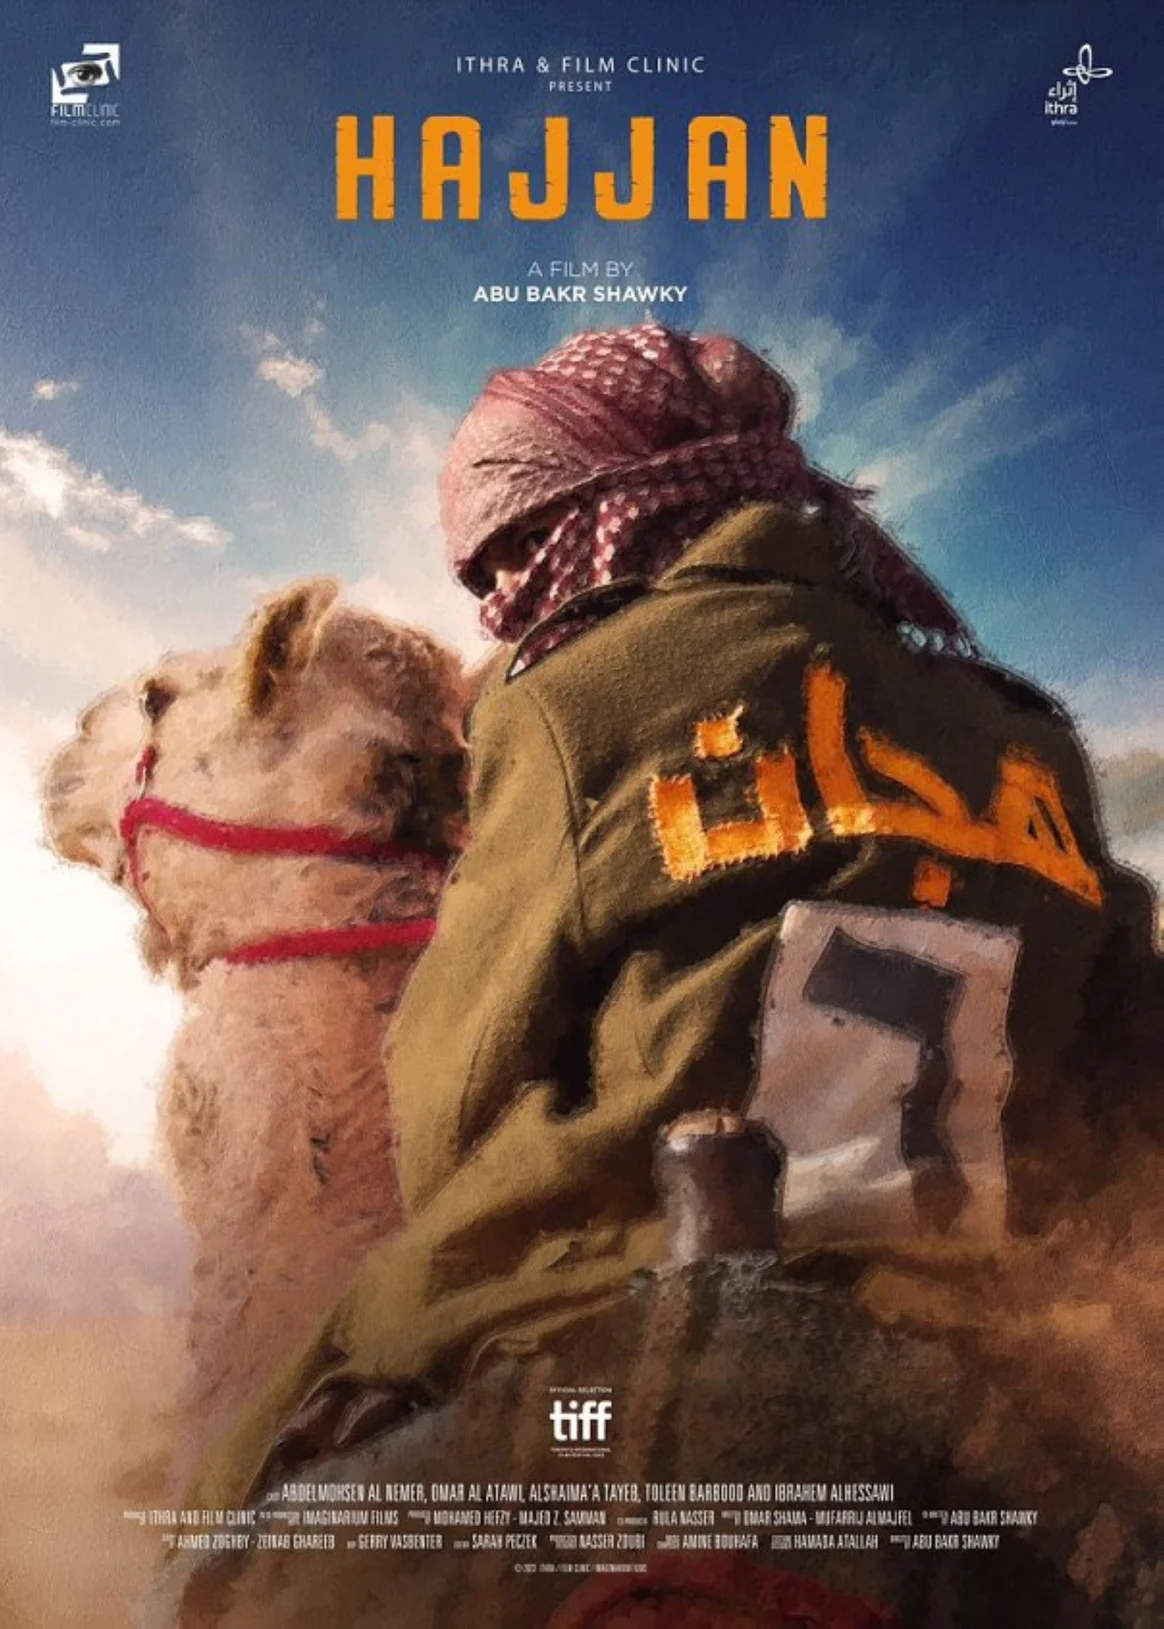 الفيلم عرض في مهرجان البحر الأحمر السينمائي الدولي ضمن قسم "روائع عربية"